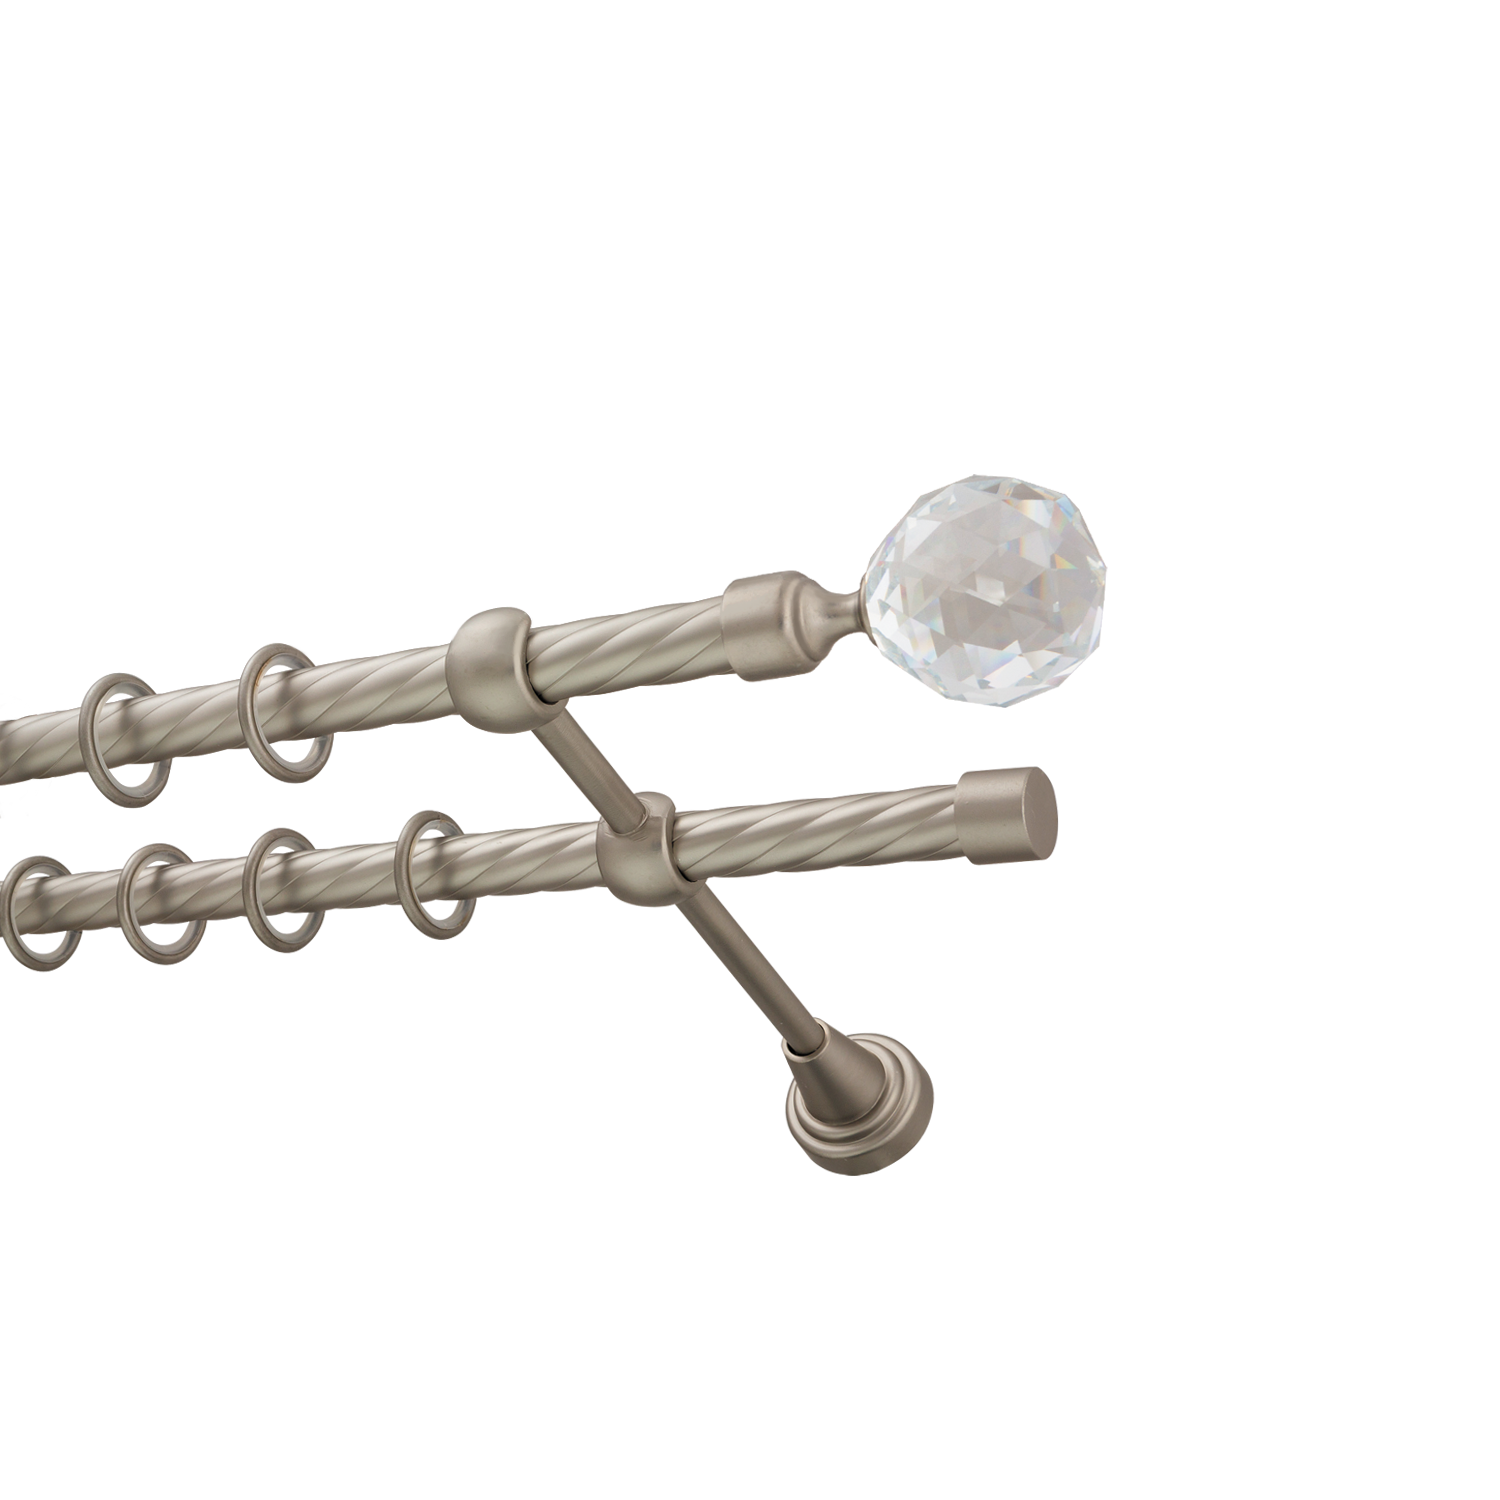 Металлический карниз для штор Карат, двухрядный 16/16 мм, сталь, витая штанга, длина 180 см - фото Wikidecor.ru